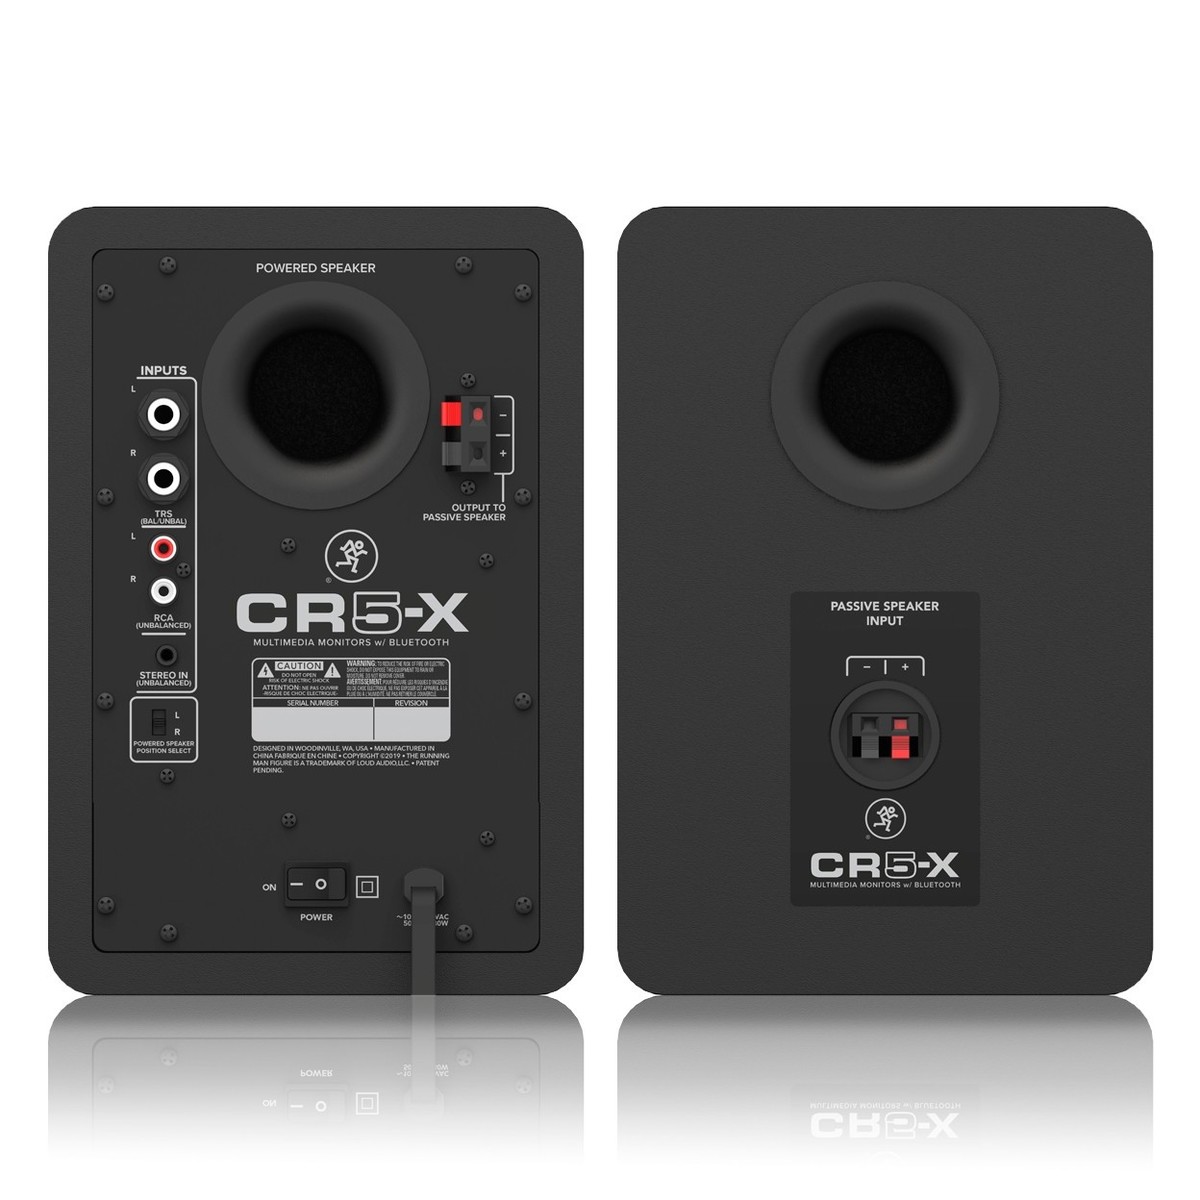 Mackie CR5-X 5'' Multimedia Monitor Speakers